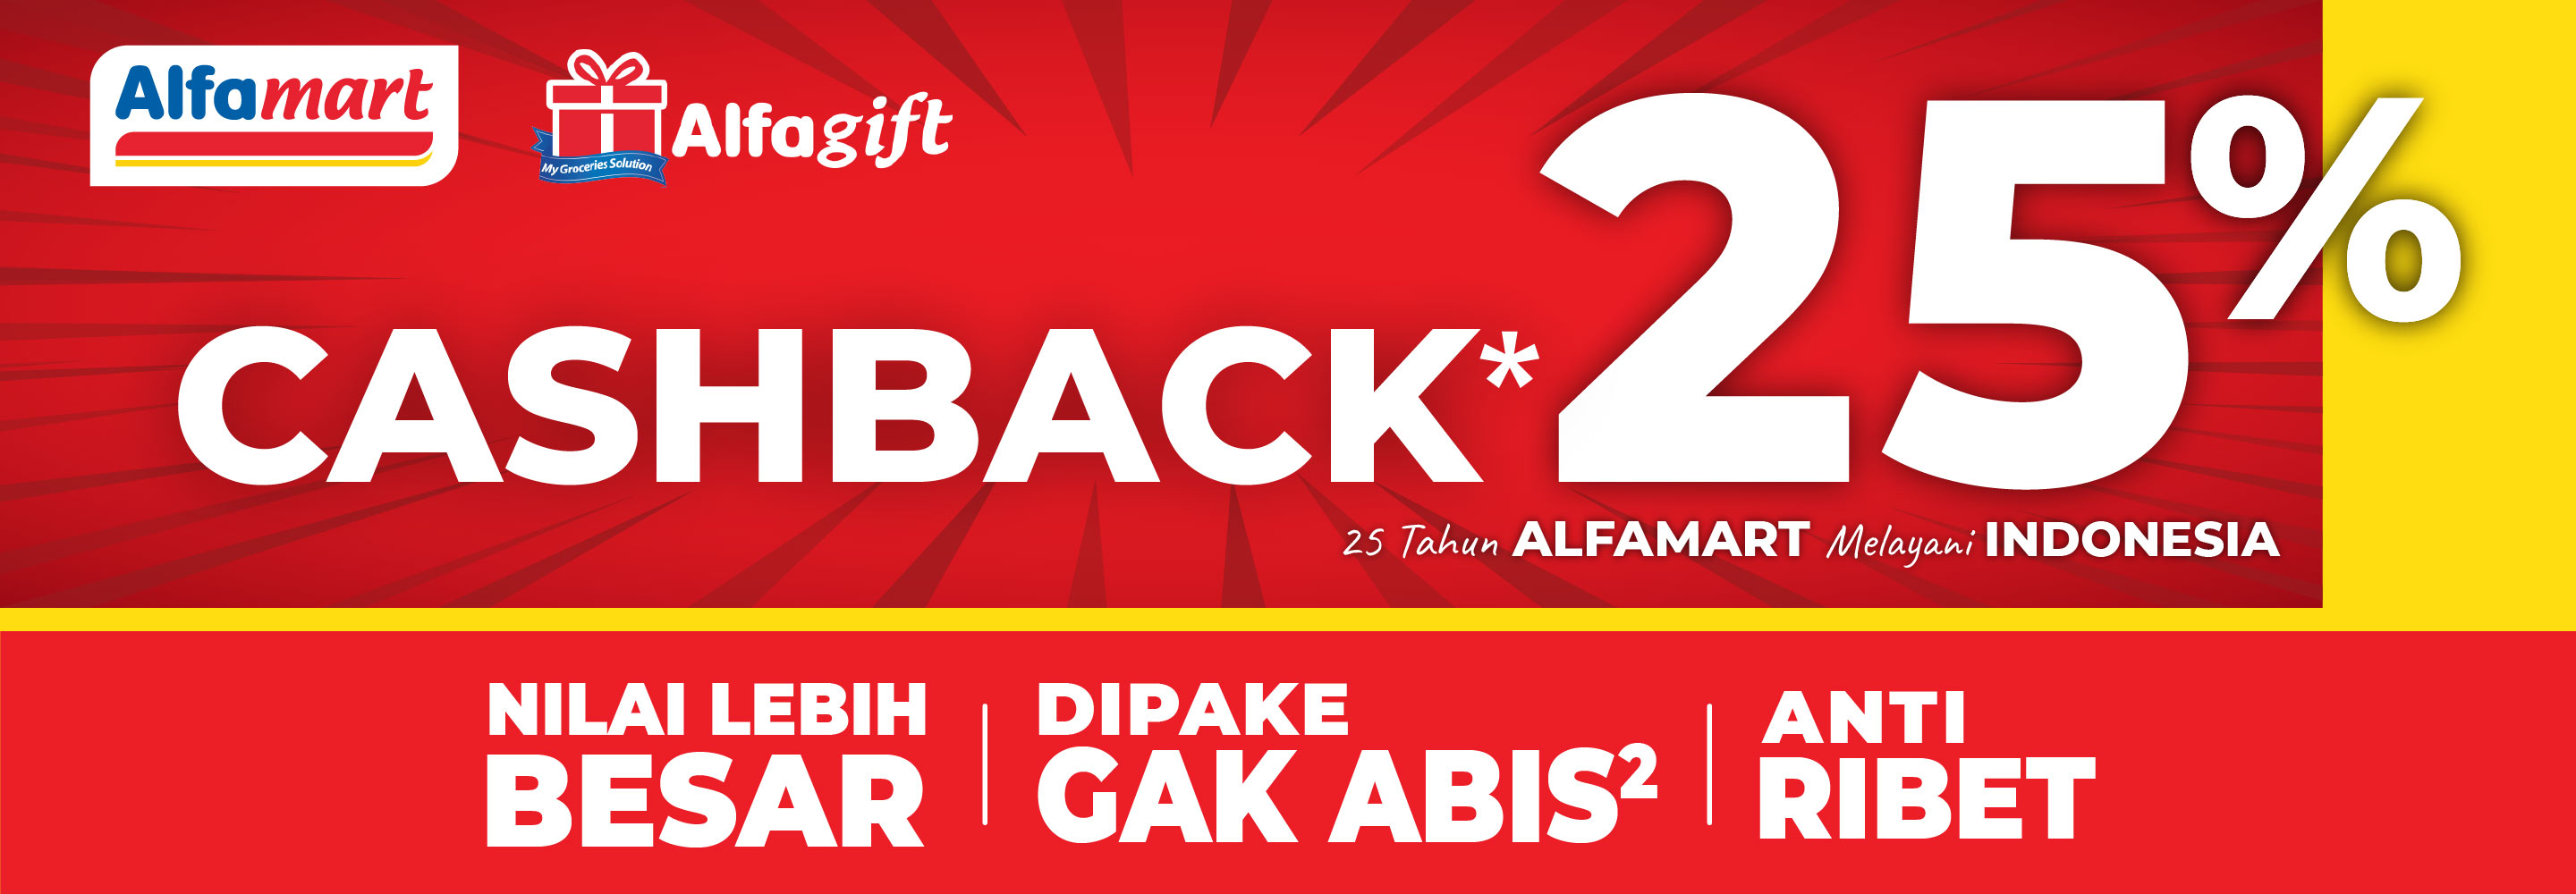 Banner promo Cashback 25 Alfamart